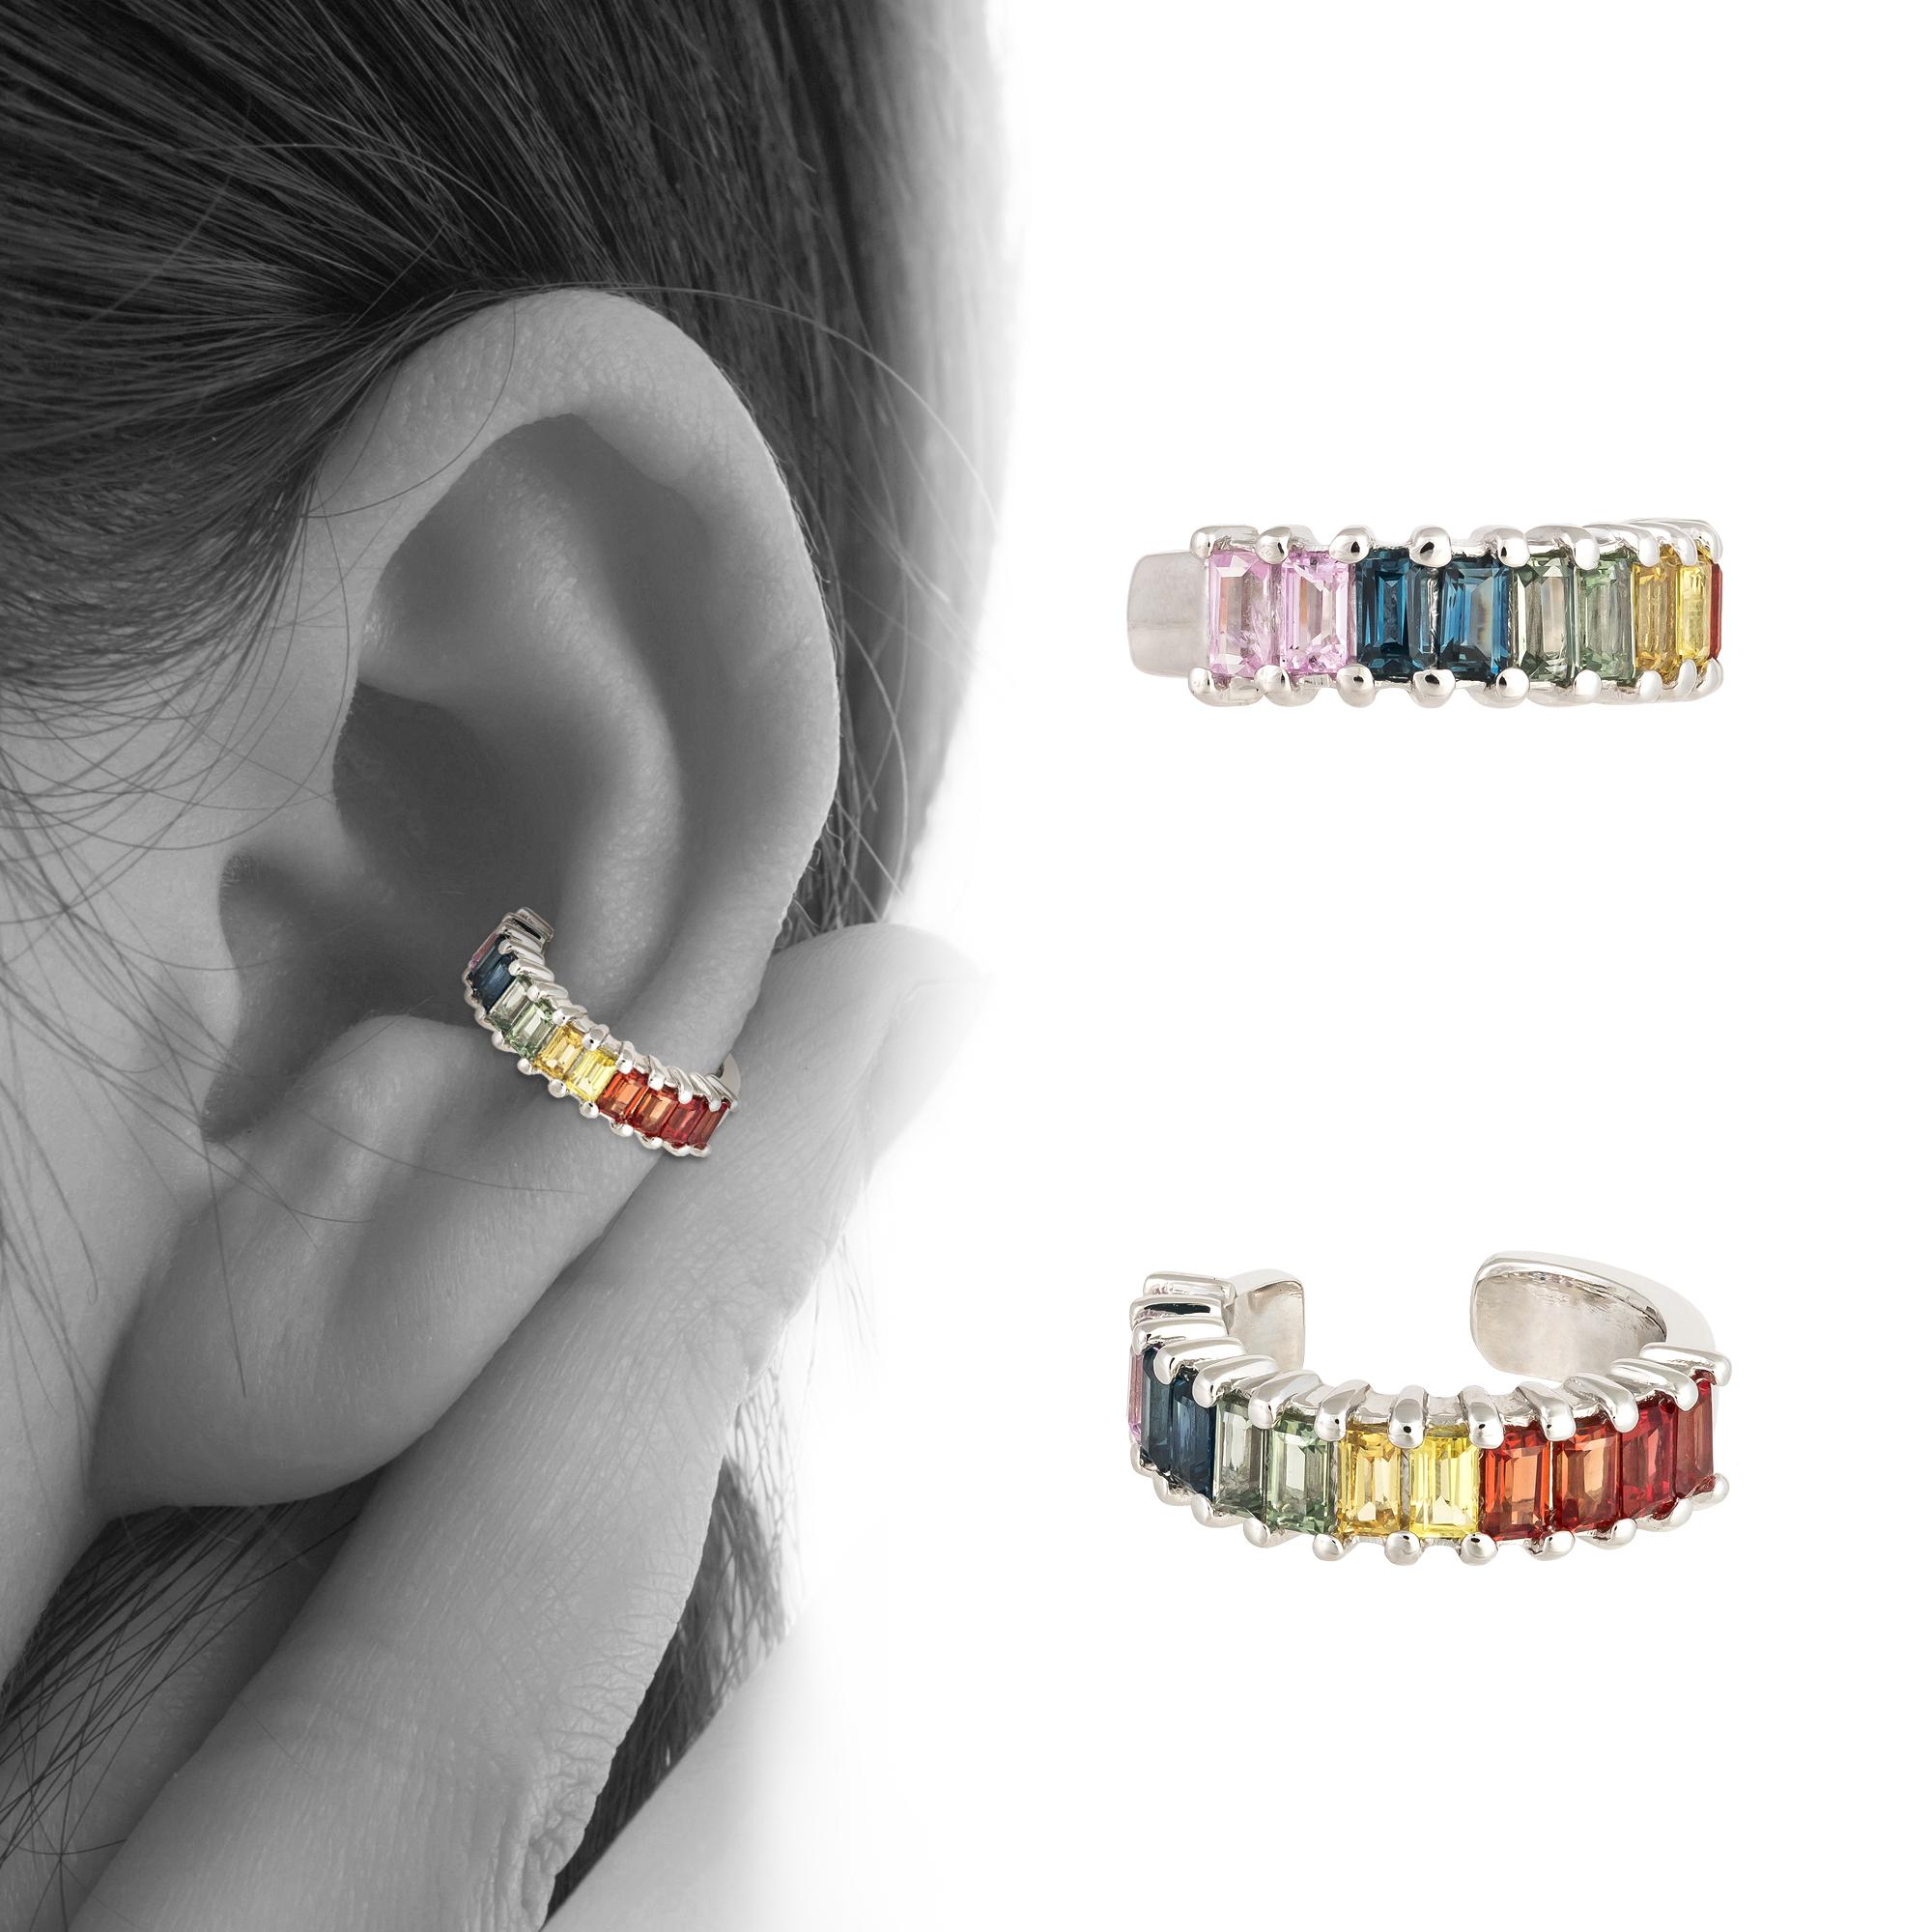 one piece earrings designs